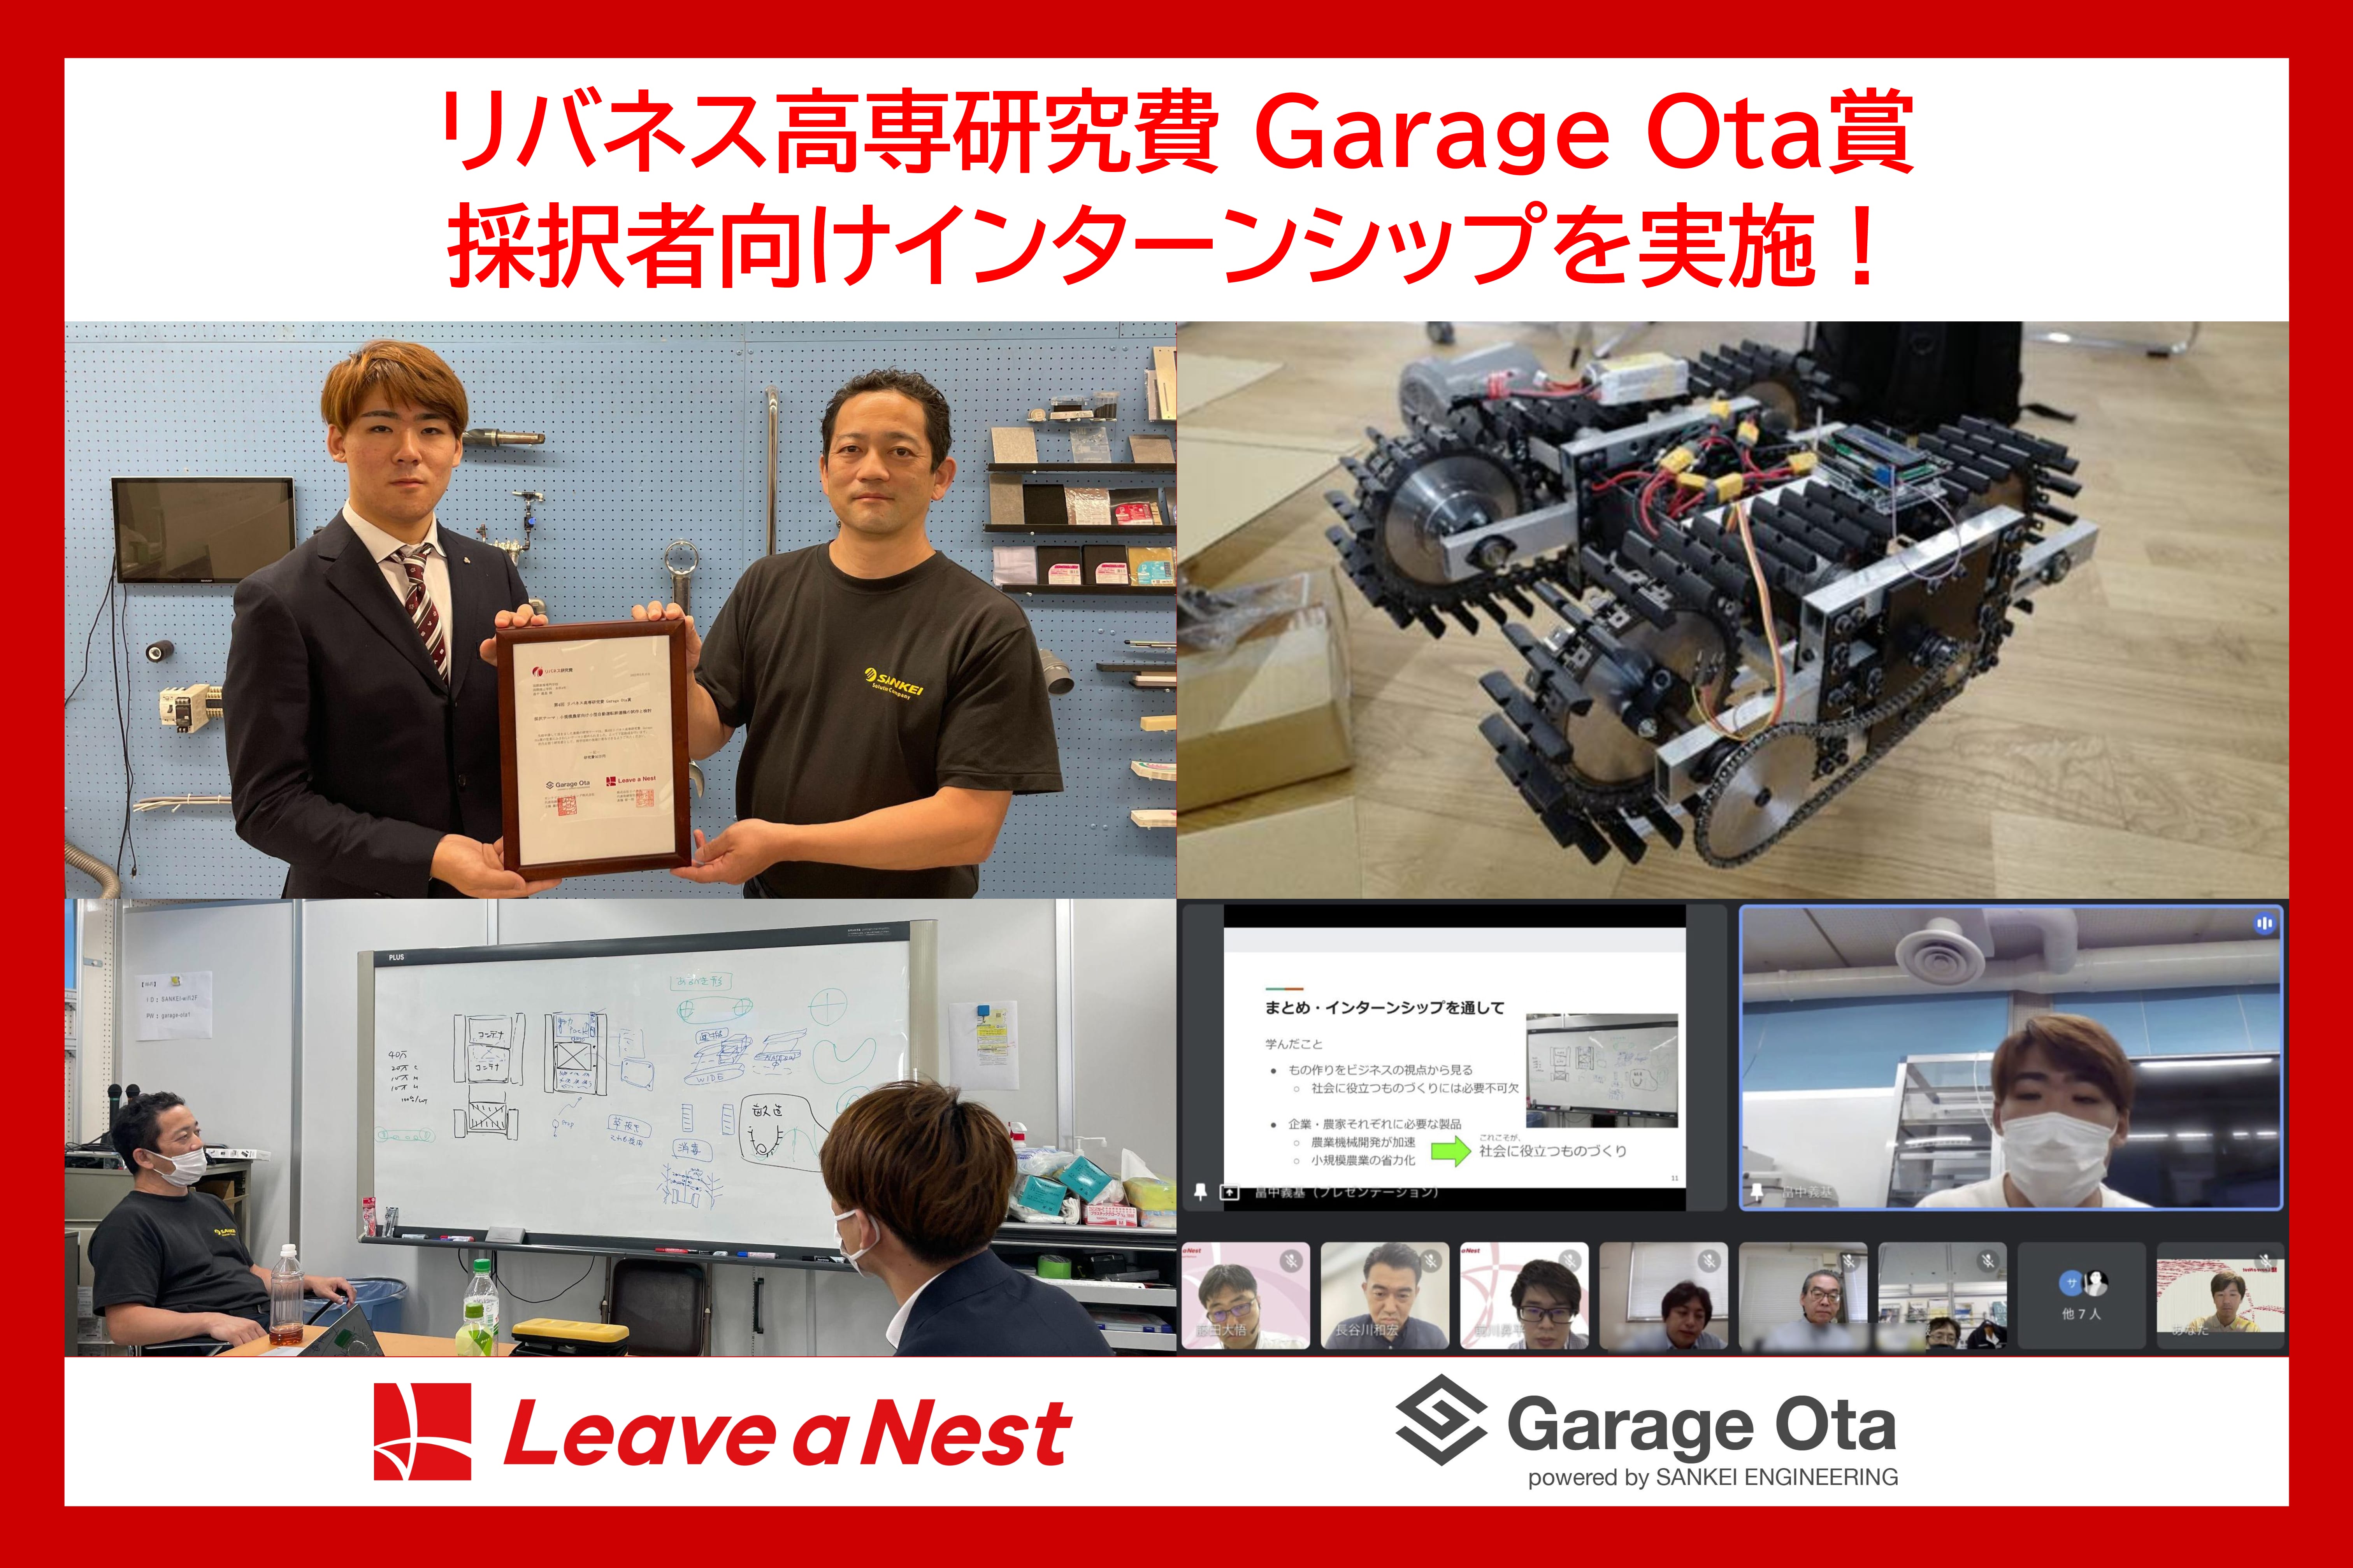 【高専生向けインターン】第4回リバネス高専研究費Garage Ota賞 採択者の研究開発を加速するインターンシップを実施しました。